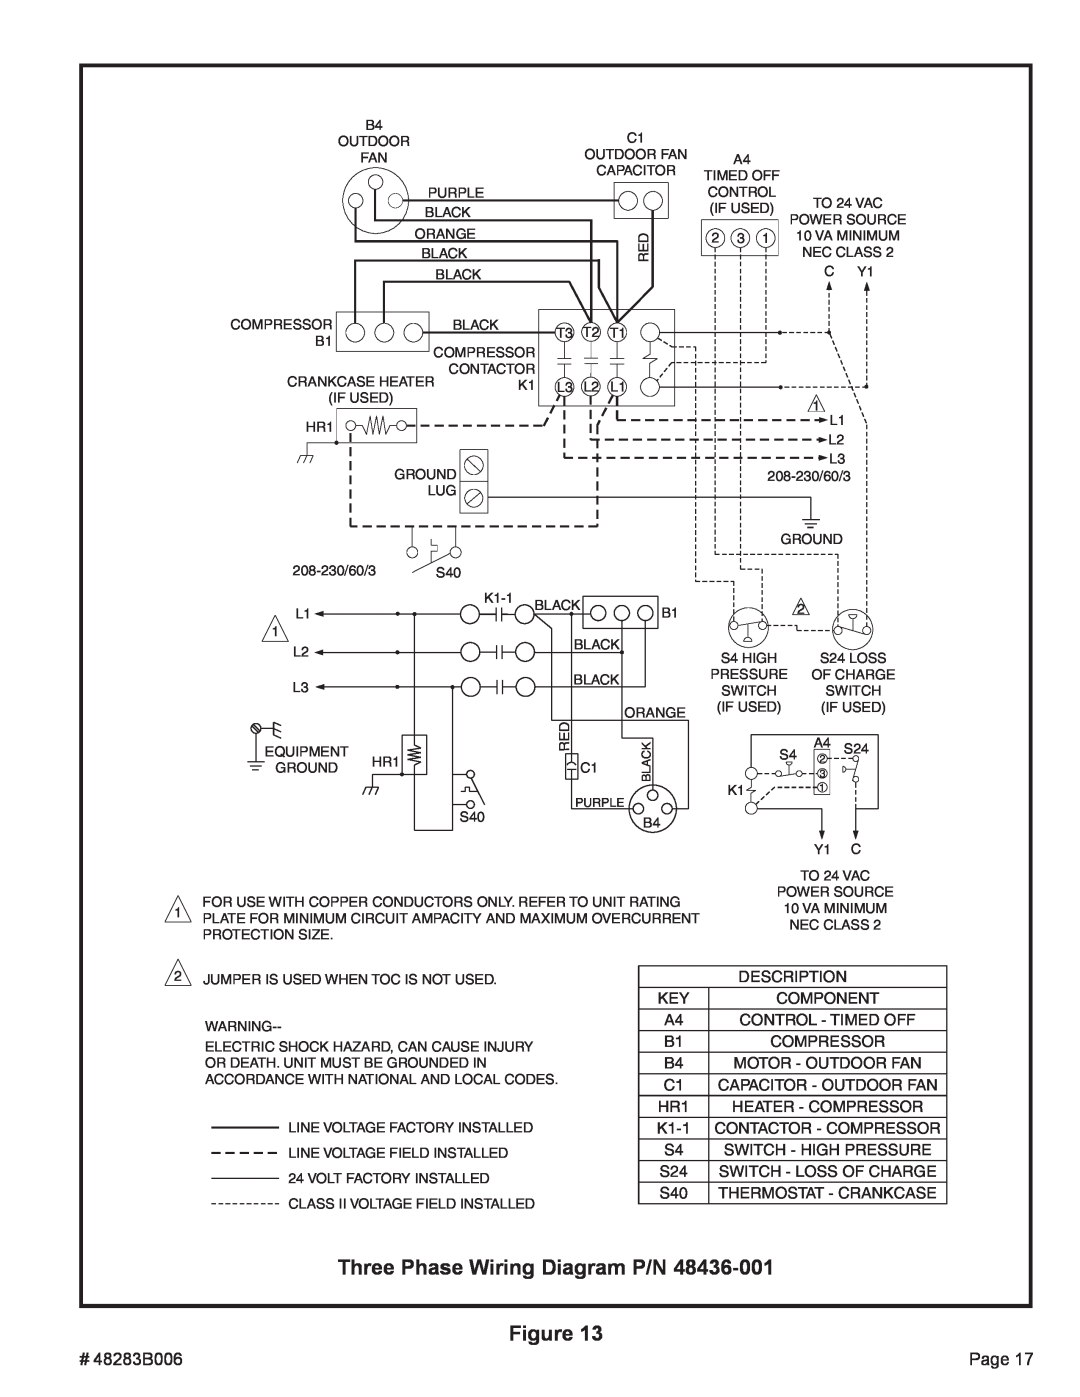 Lennox International Inc 2SCU13 warranty Three Phase Wiring Diagram P/N Figure 